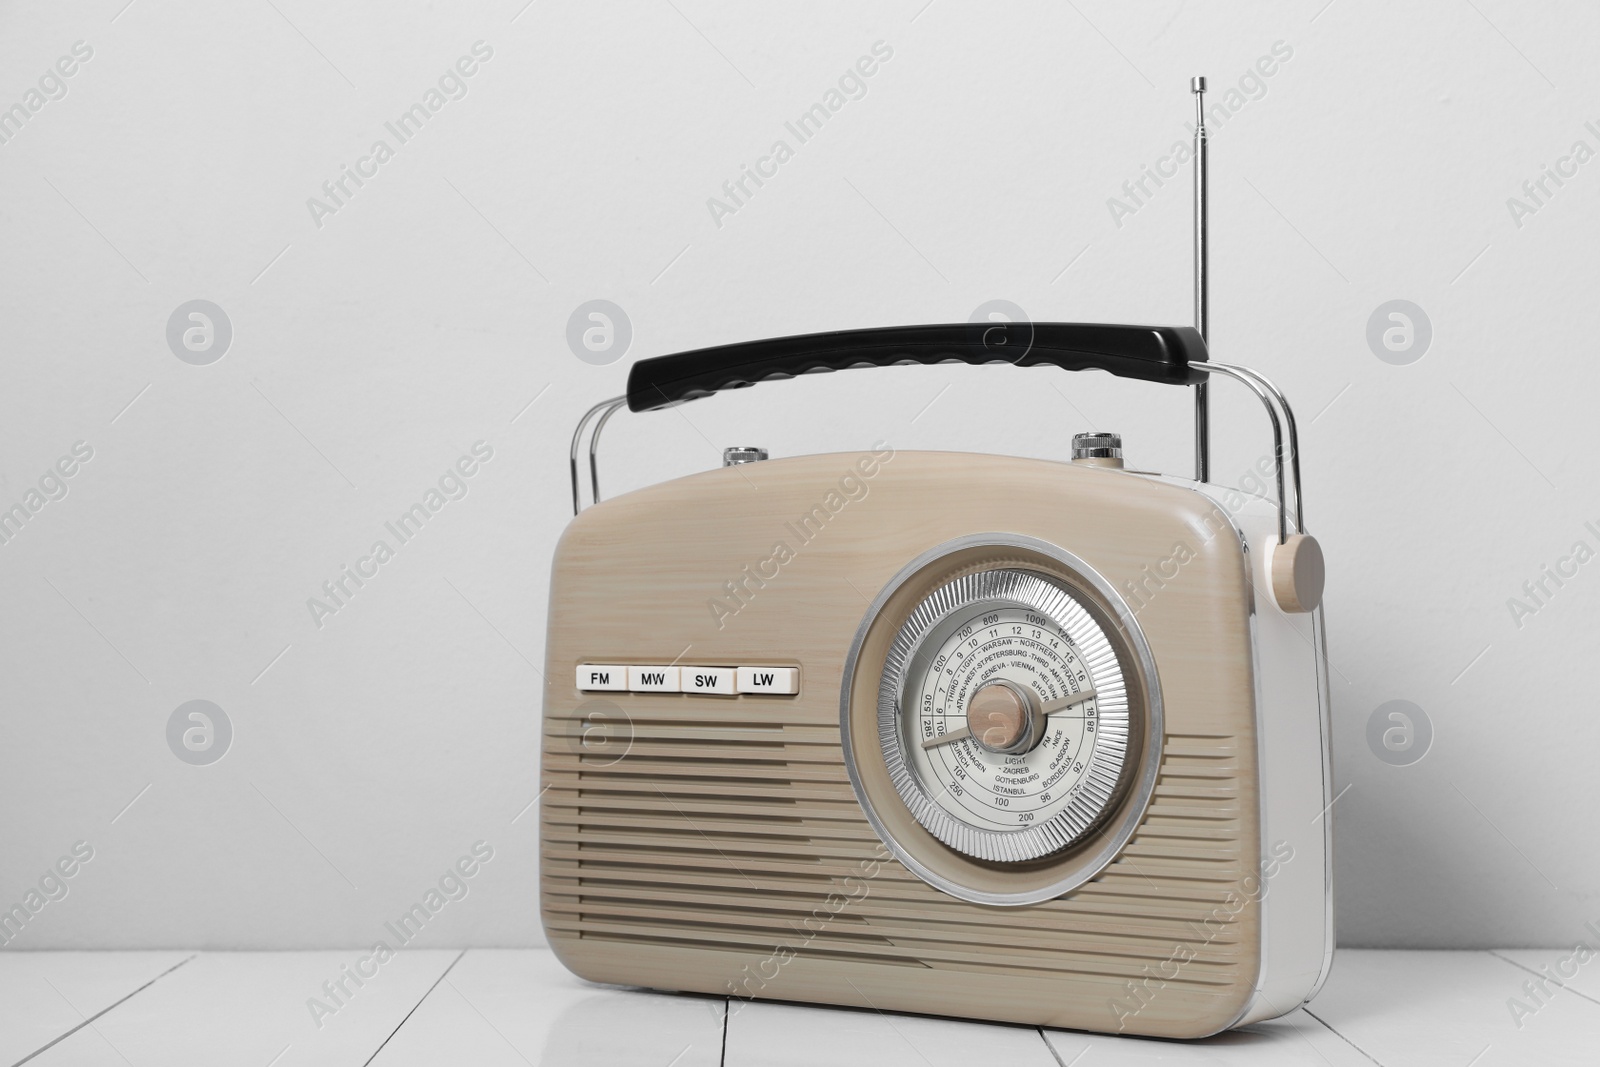 Photo of Retro radio receiver on white wooden table